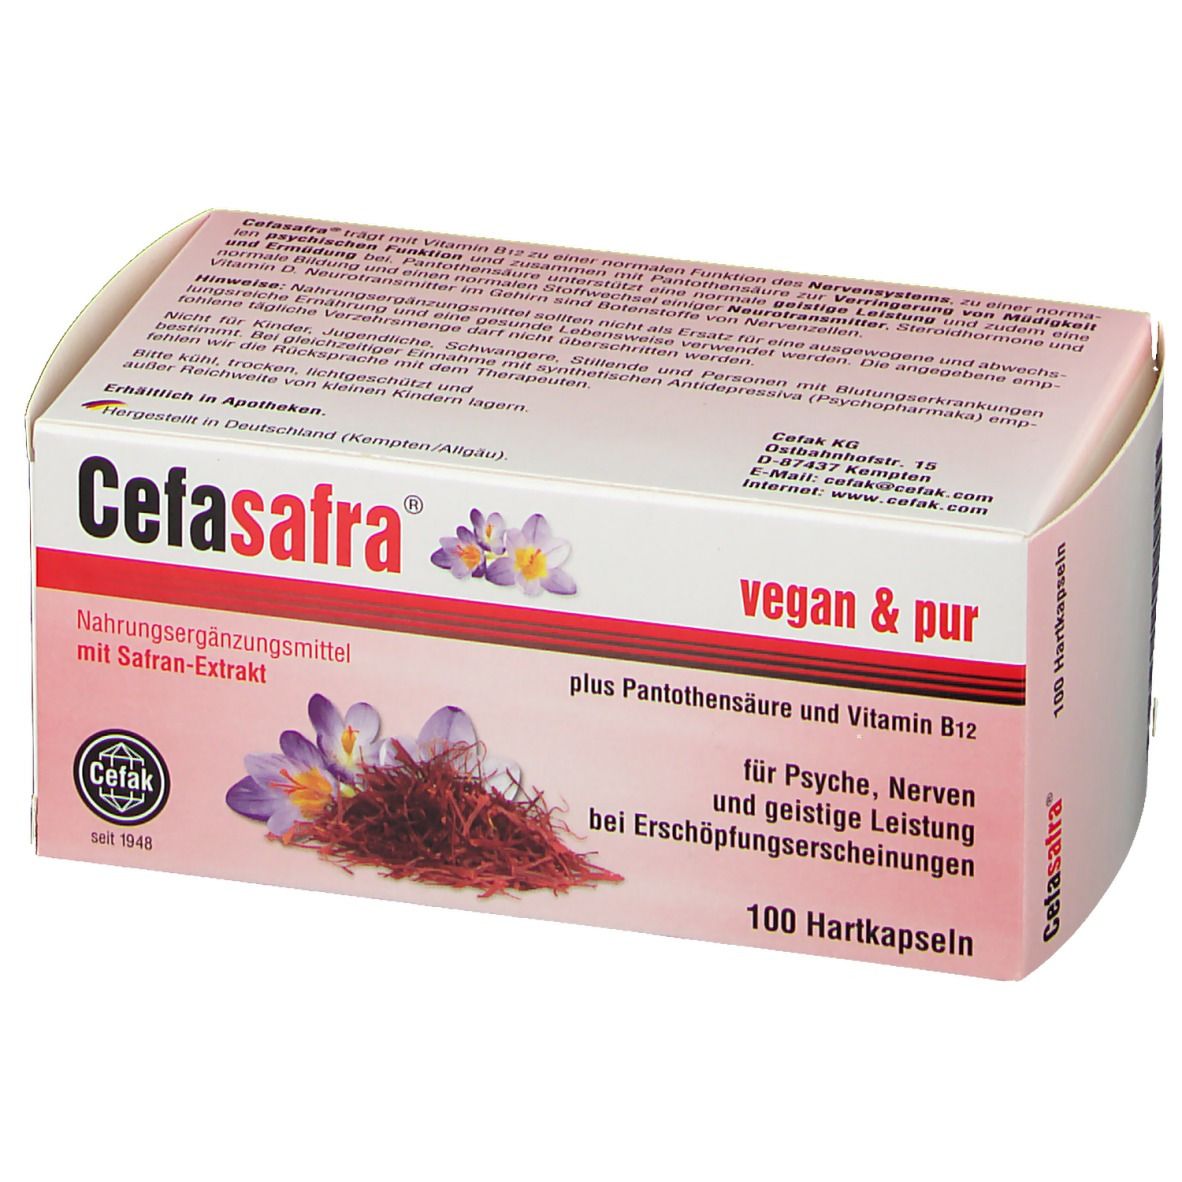 Cefasafra® vegan & pur